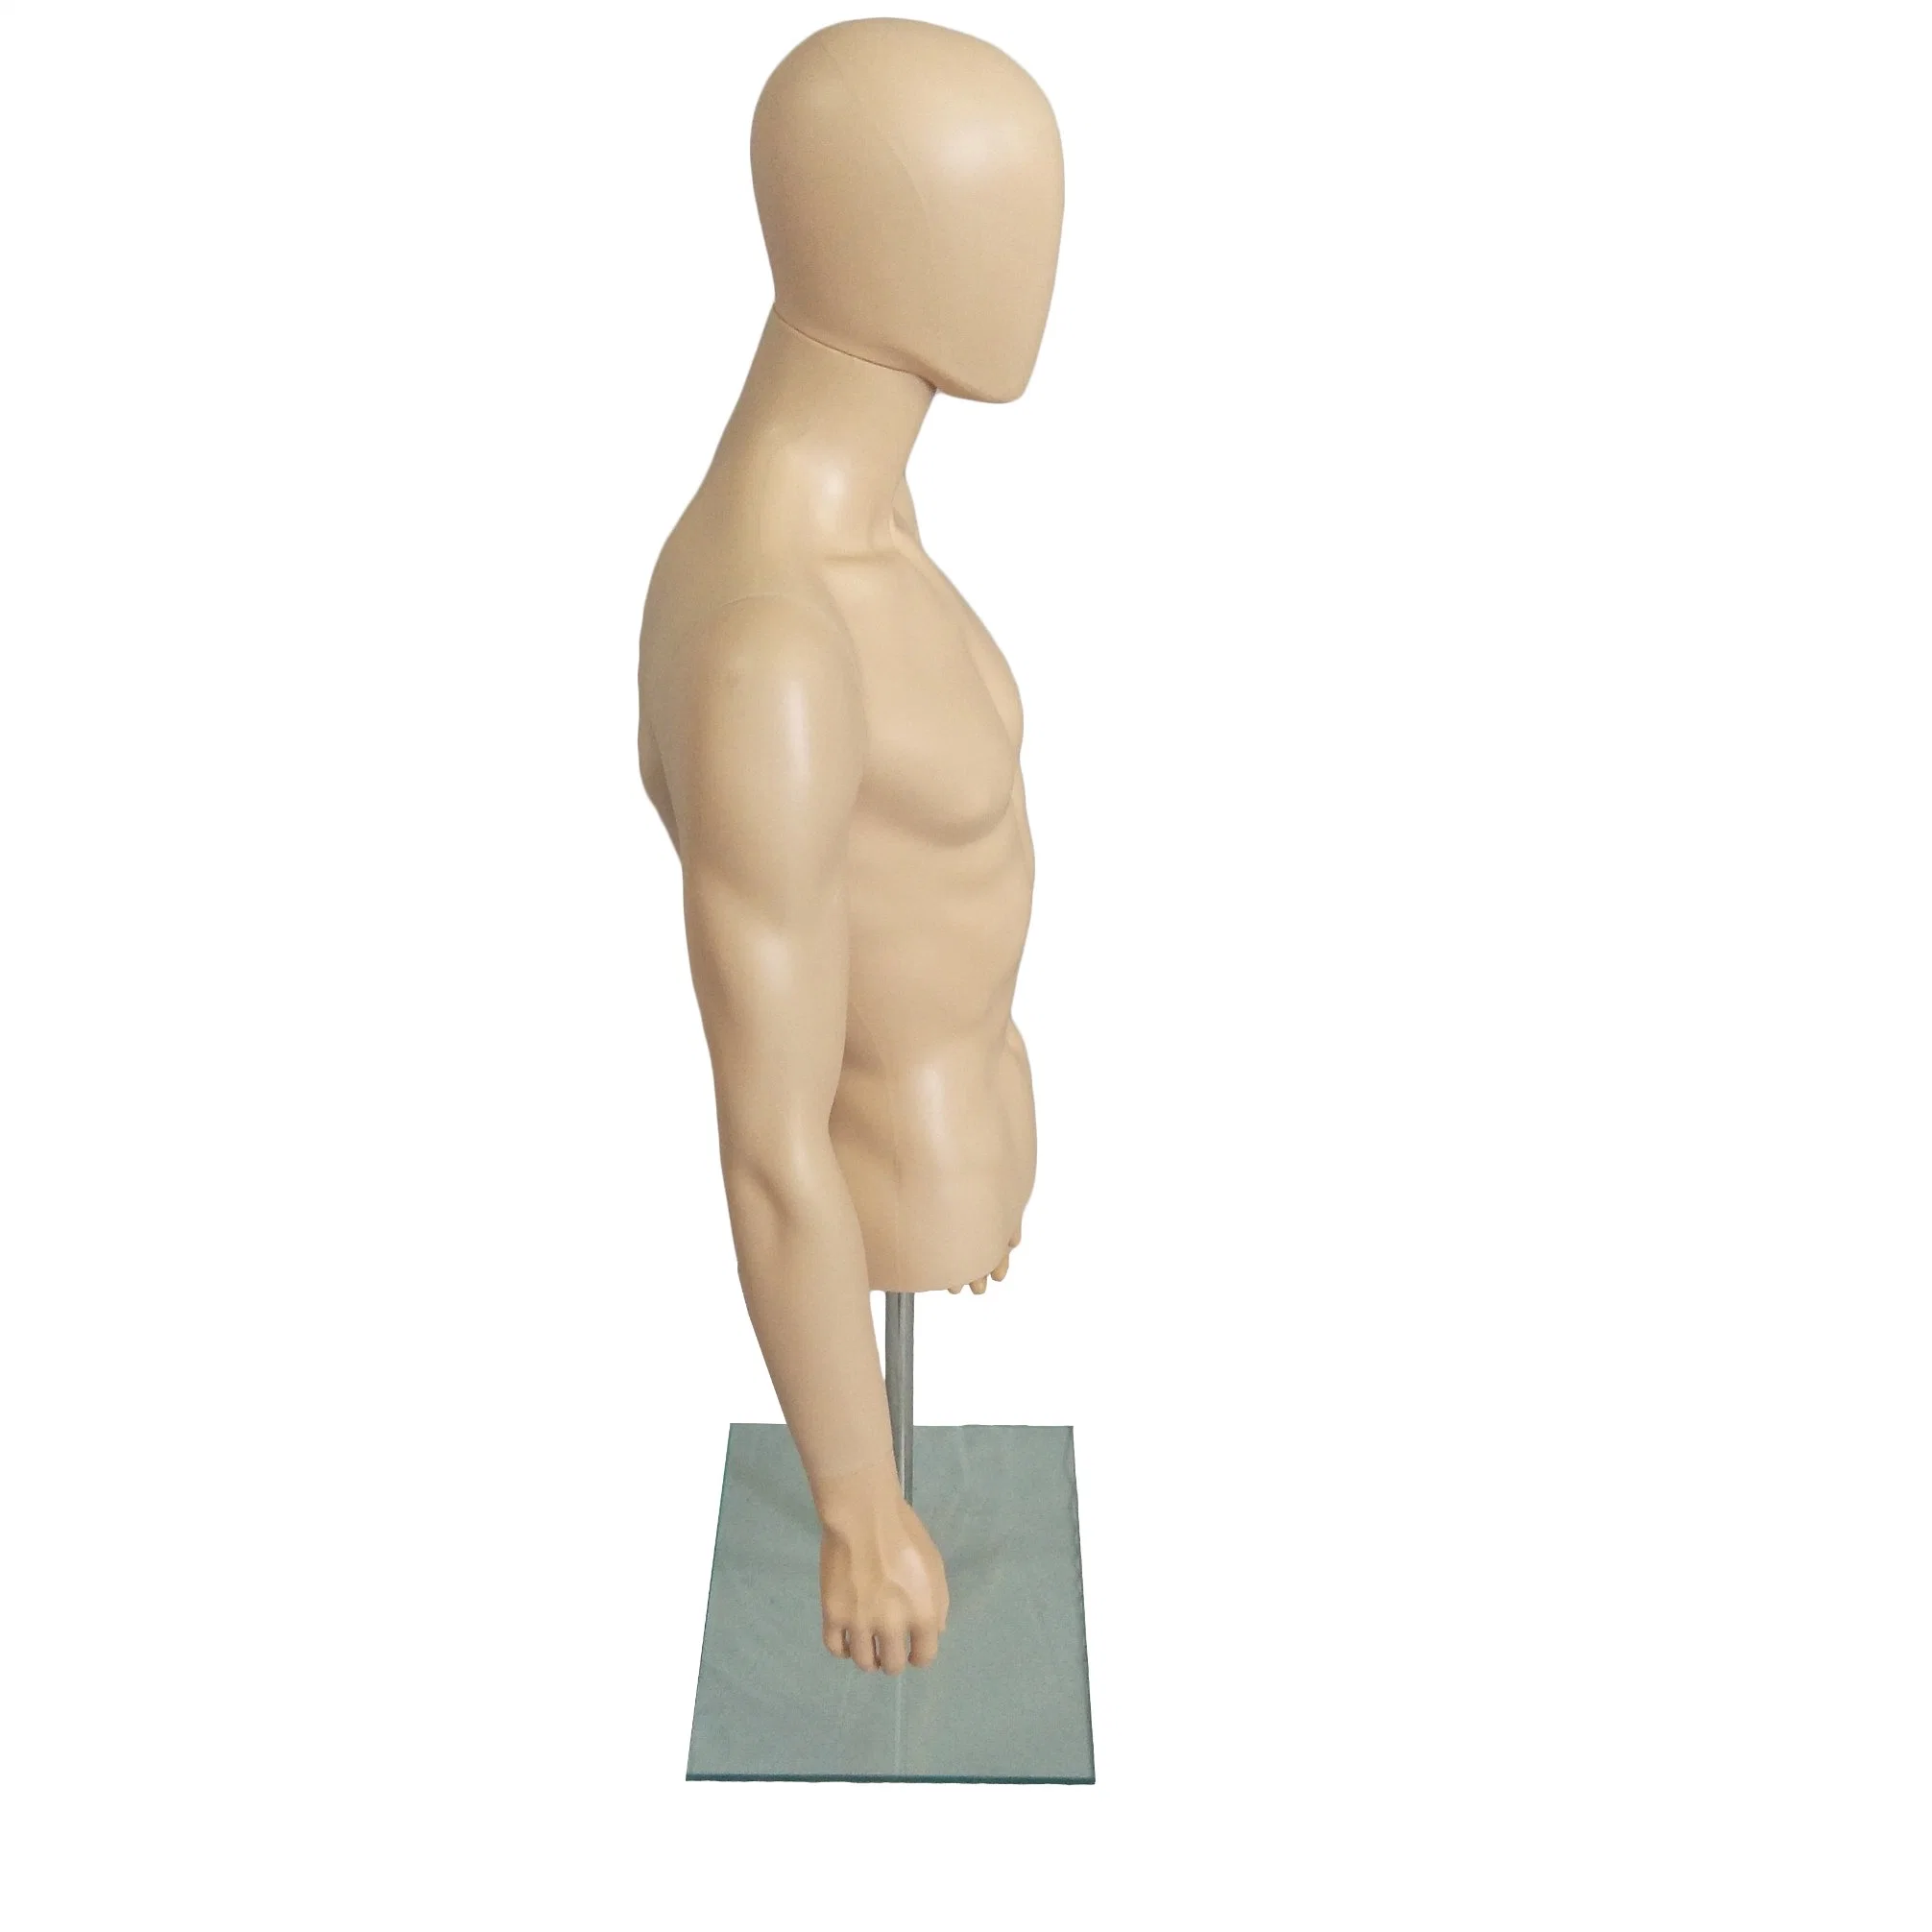 Kleiden Mannequin Shop Wellpappe PP-Display männlich stehend voll / halb Körper